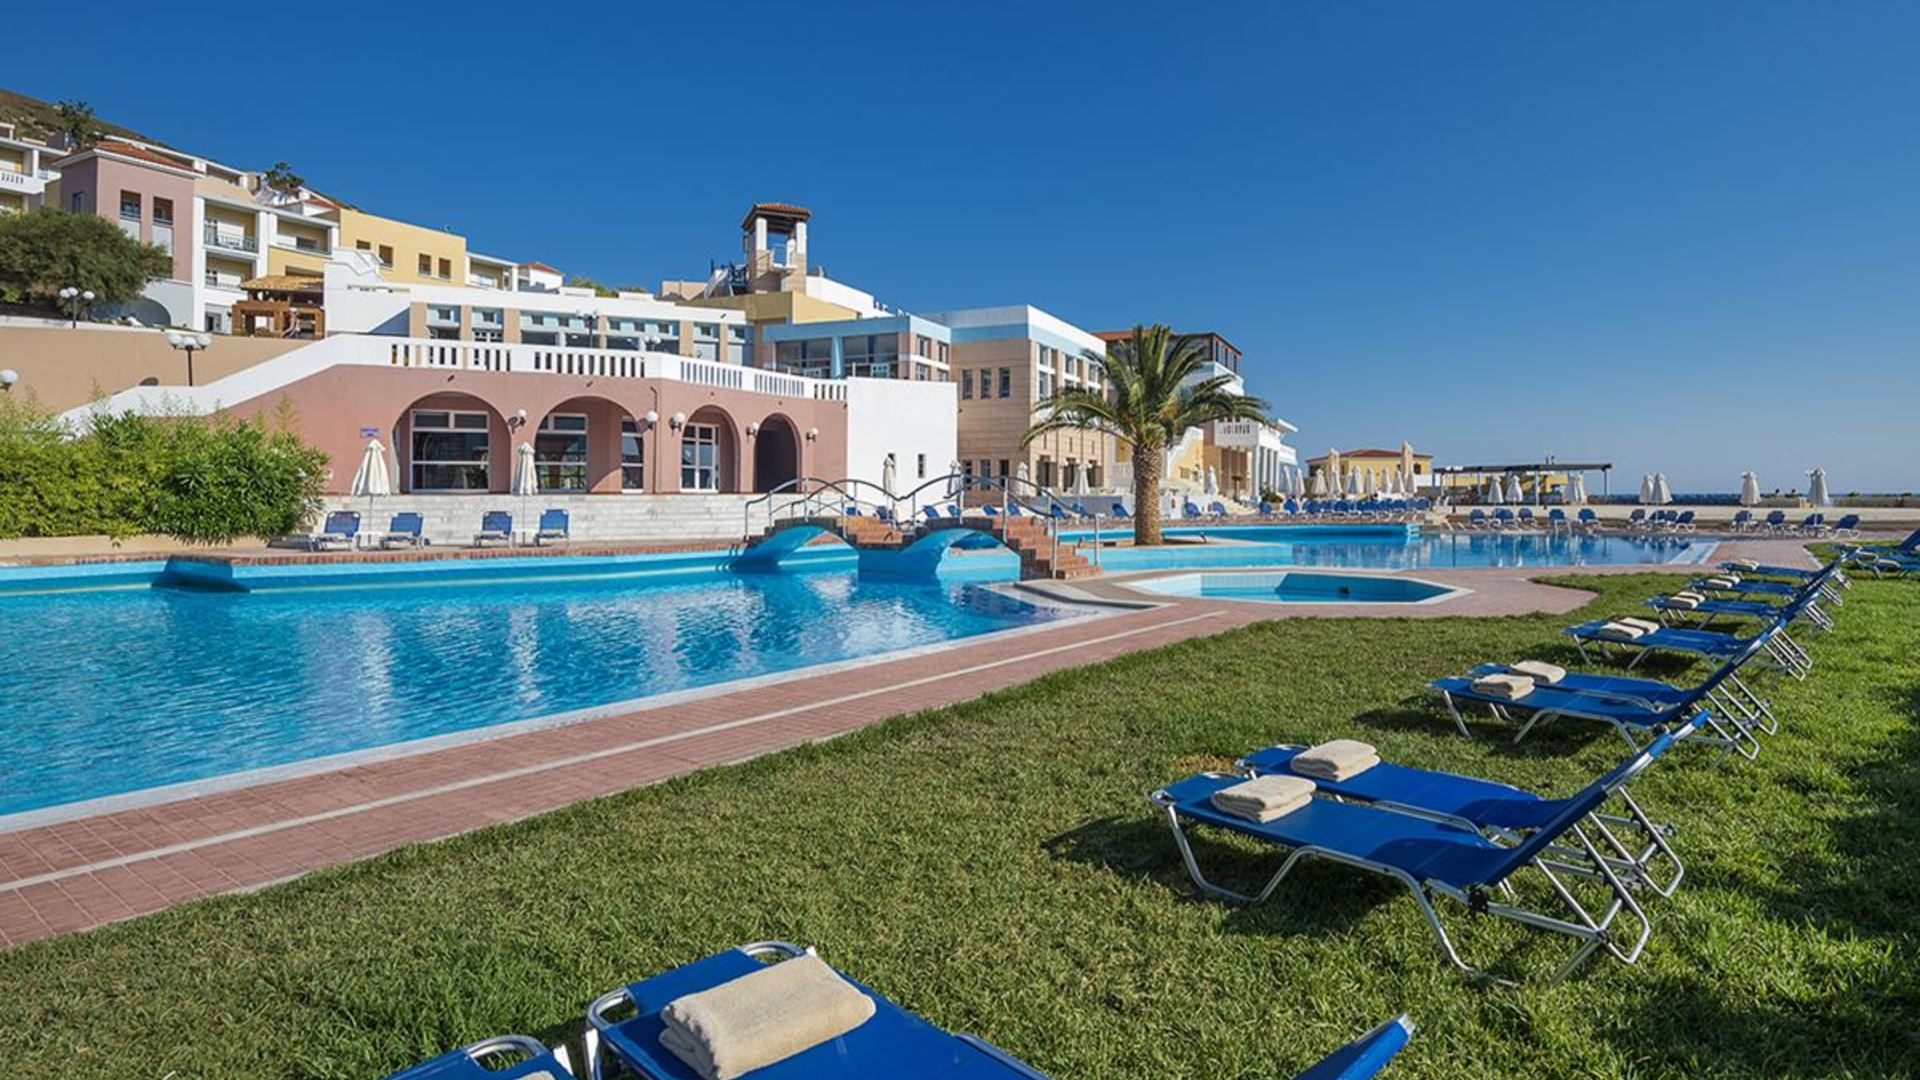 Отдых на острове крит 2019: курорты, пляжи, отели все включено